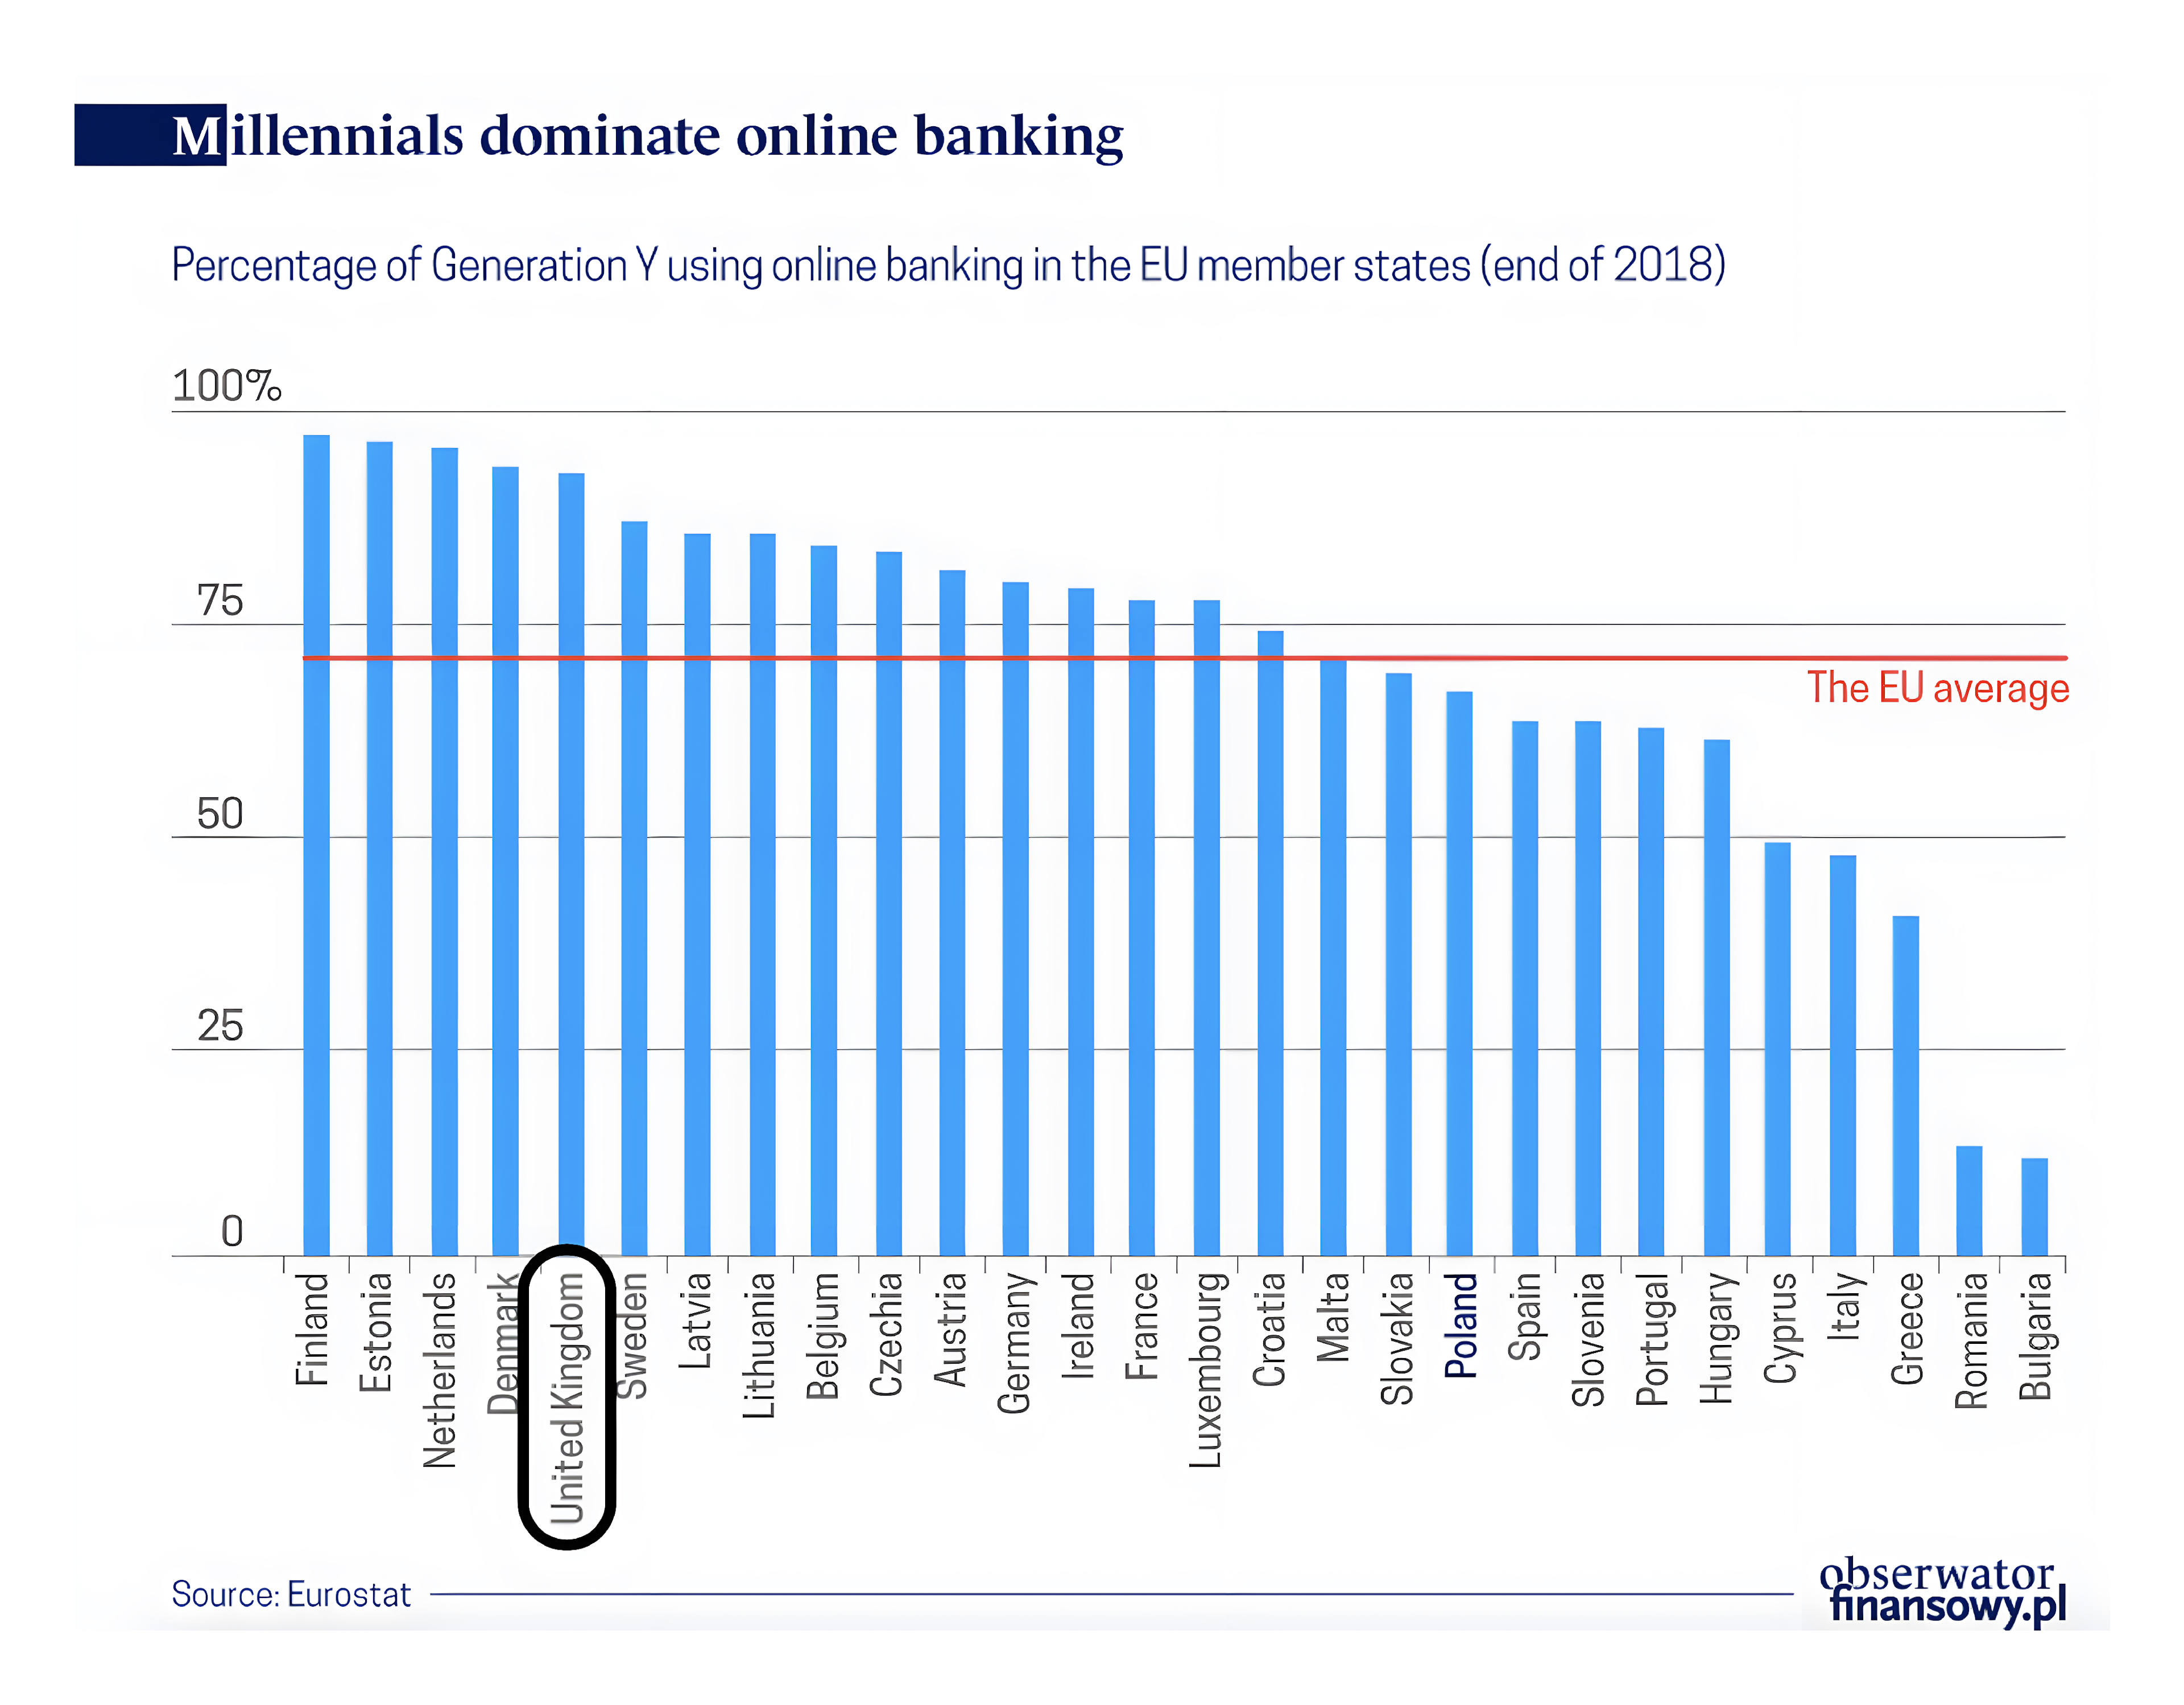 Millenials dominating online banking